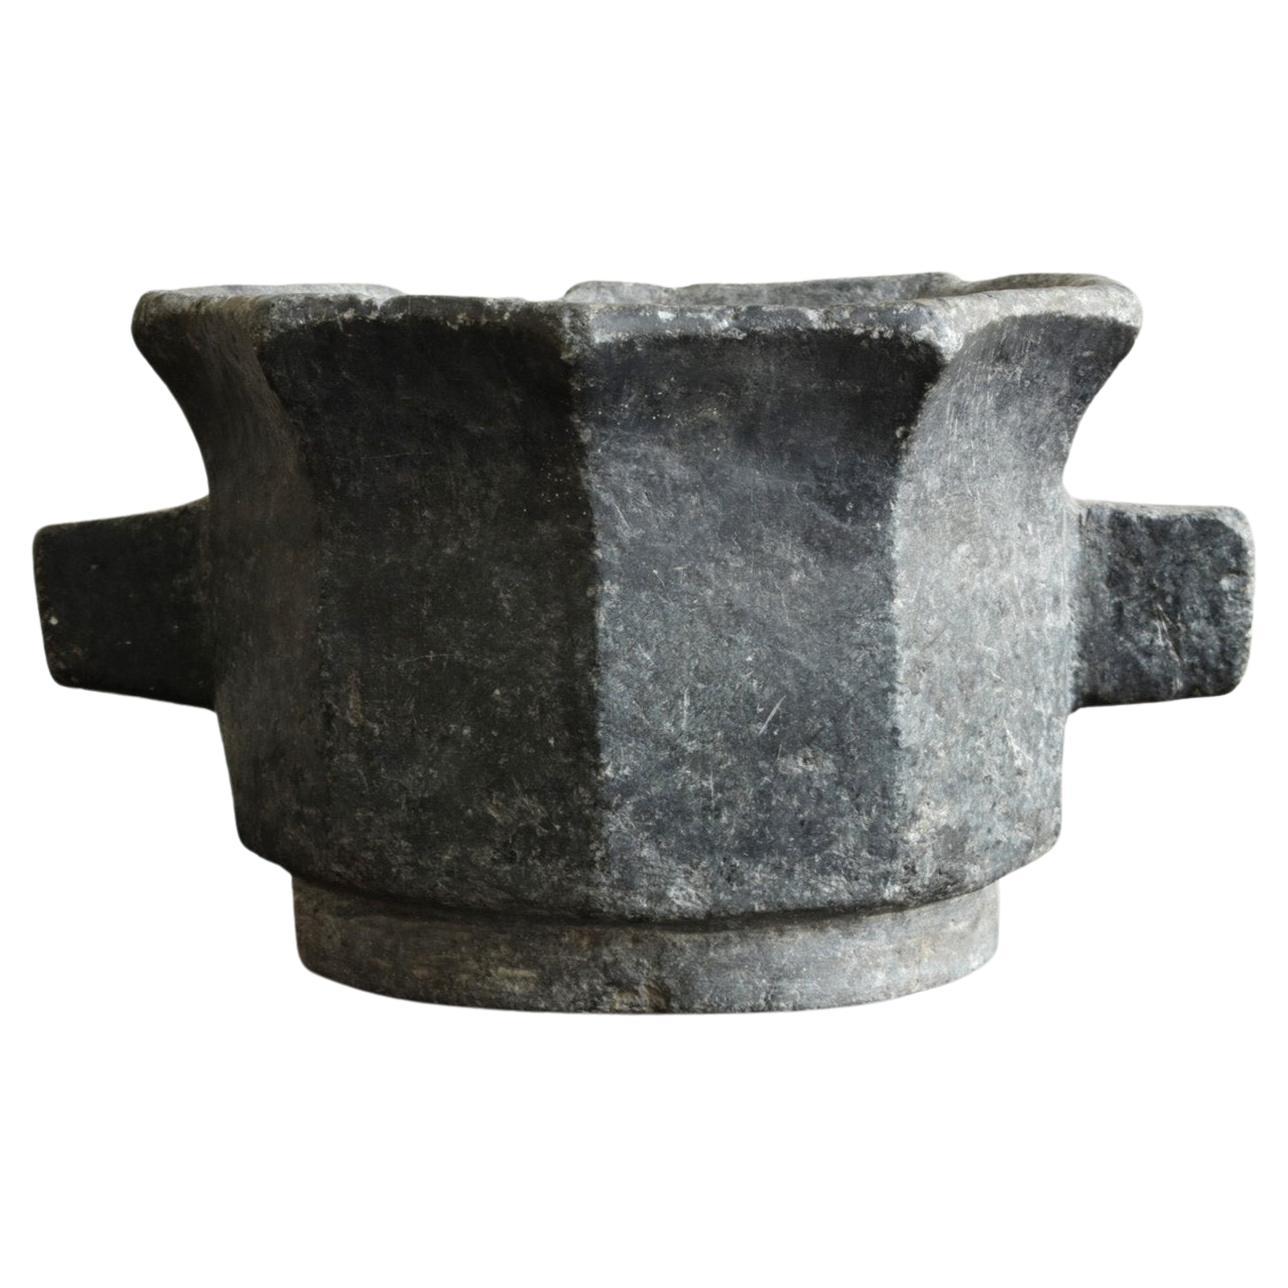 Korean antique stone bowl / 19th century / wabi-sabi vase / Joseon Dynasty